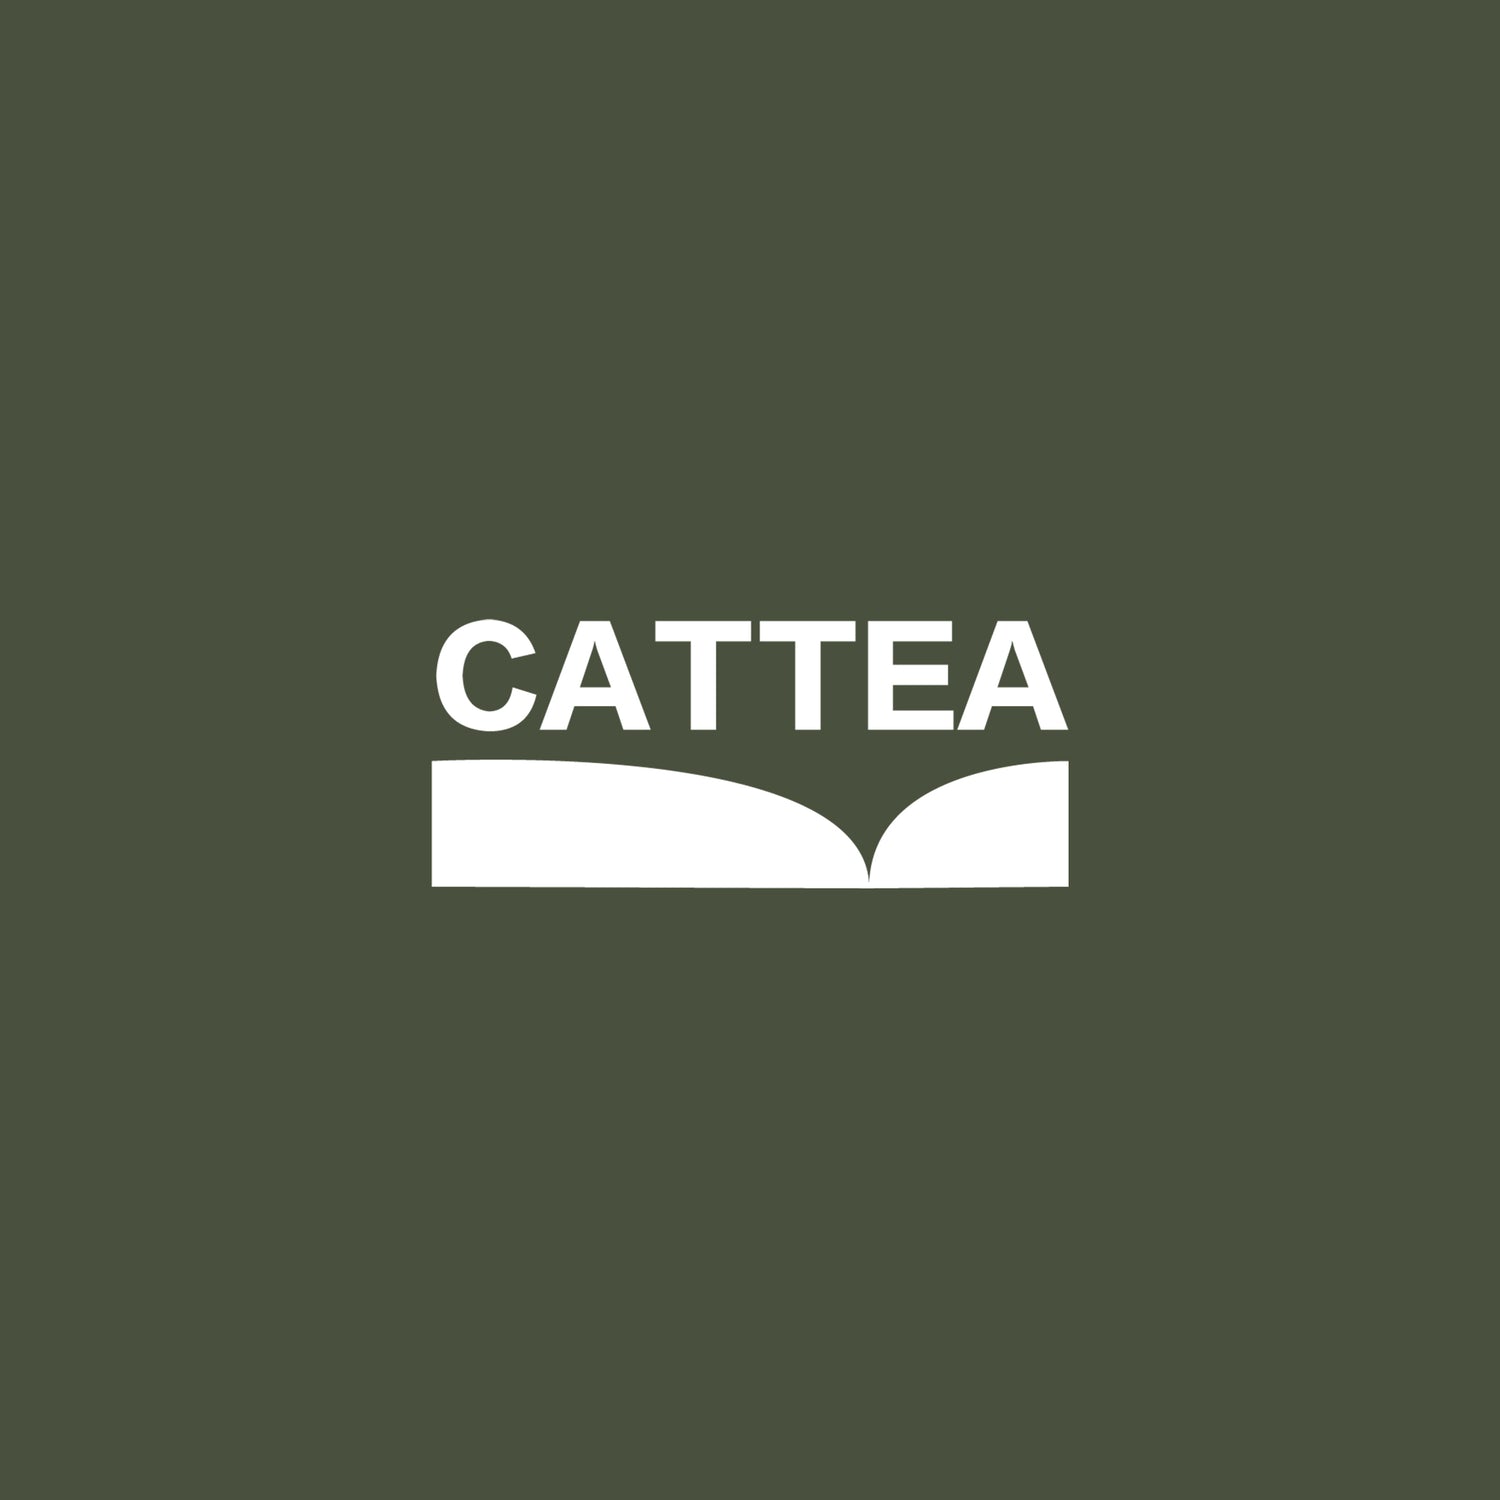 所有商品 - Cattea 台灣天然花果茶品牌